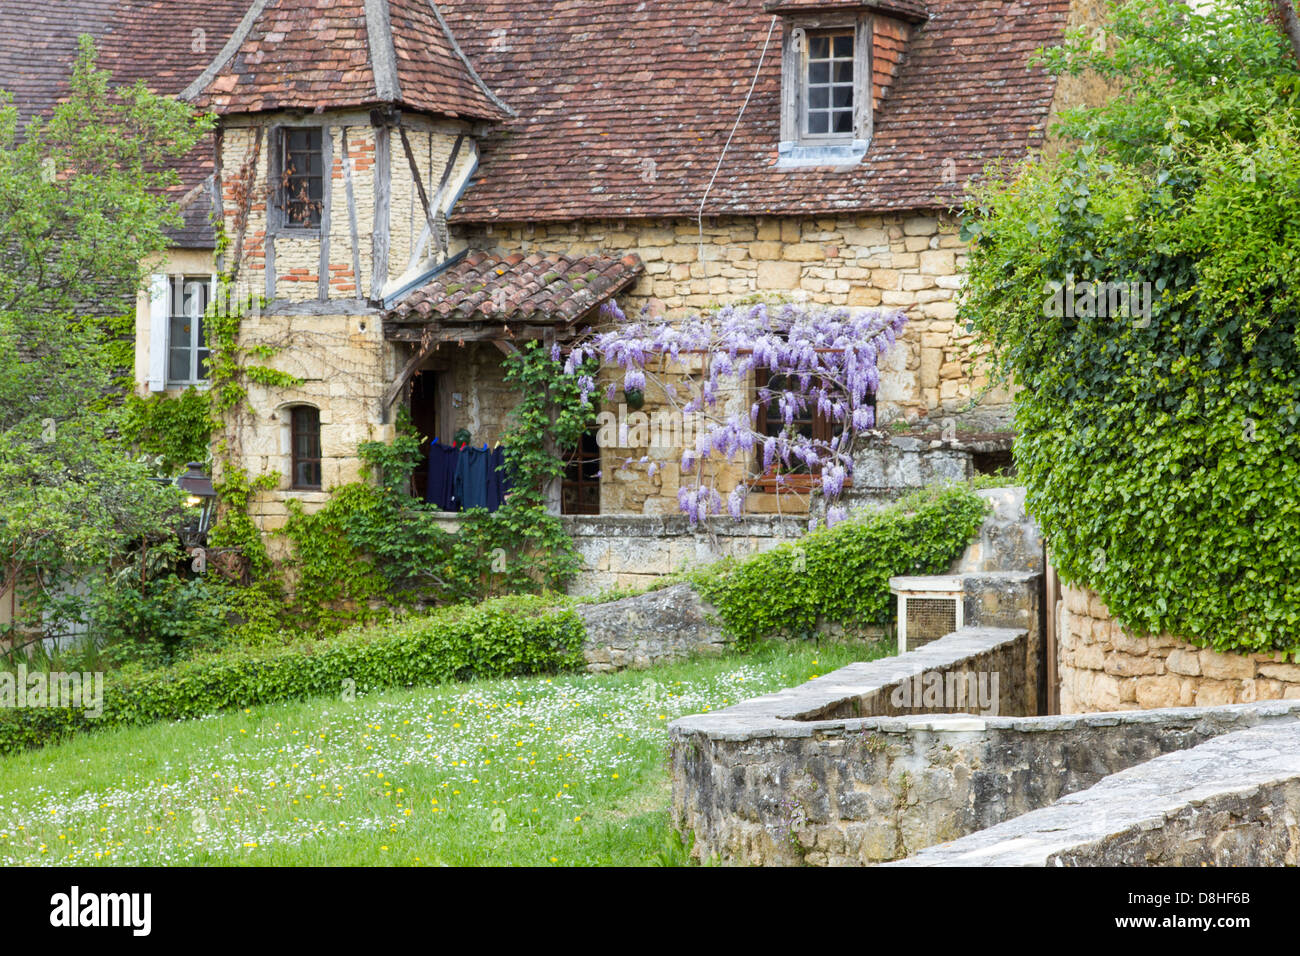 De plus en plus charmant sur Wisteria cottage avec toit de tuiles de grès à Sarlat, Dordogne France Banque D'Images